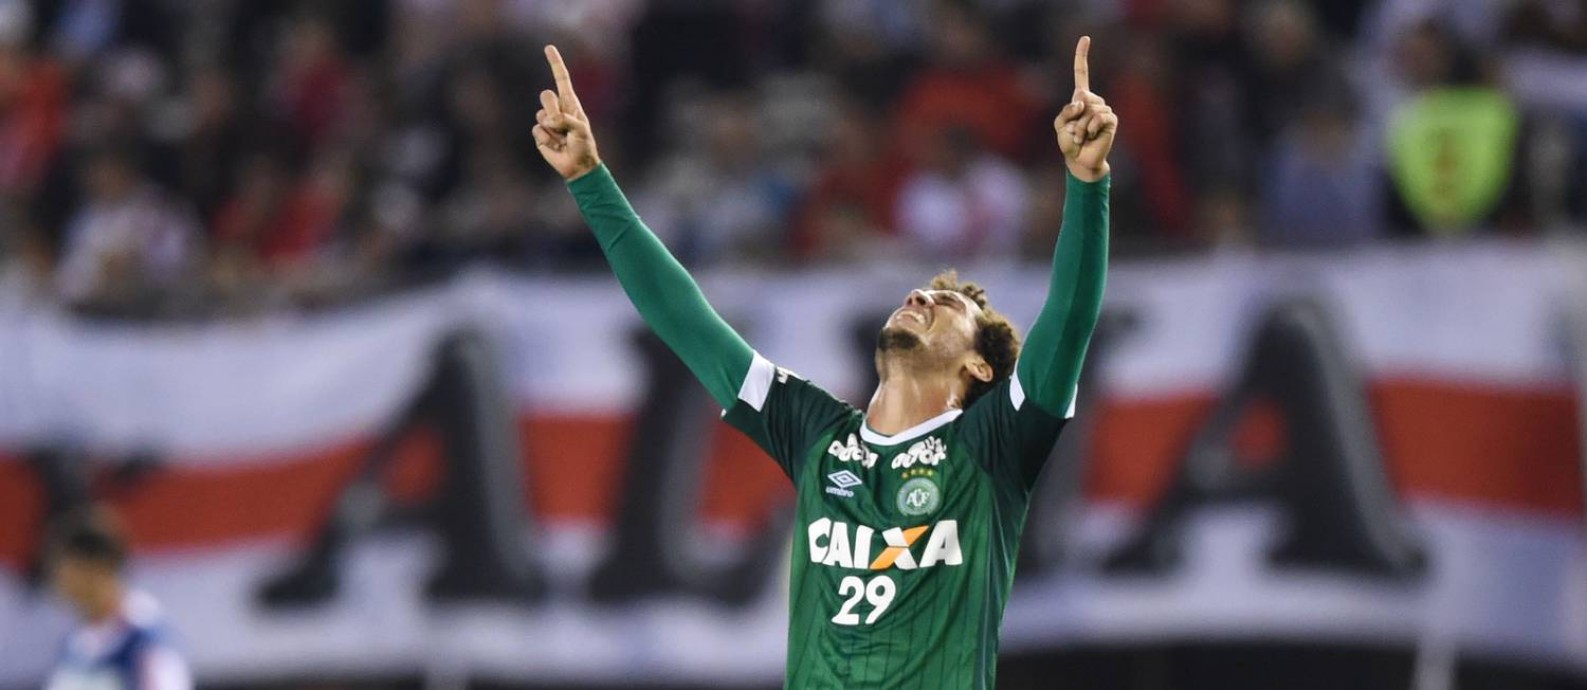 O zagueiro Neto, em foto de 21 de outubro de 2015, festejando após marcar gol pela Chapecoense em jogo da Copa Sul-Americana daquele ano Foto: EITAN ABRAMOVICH / AFP